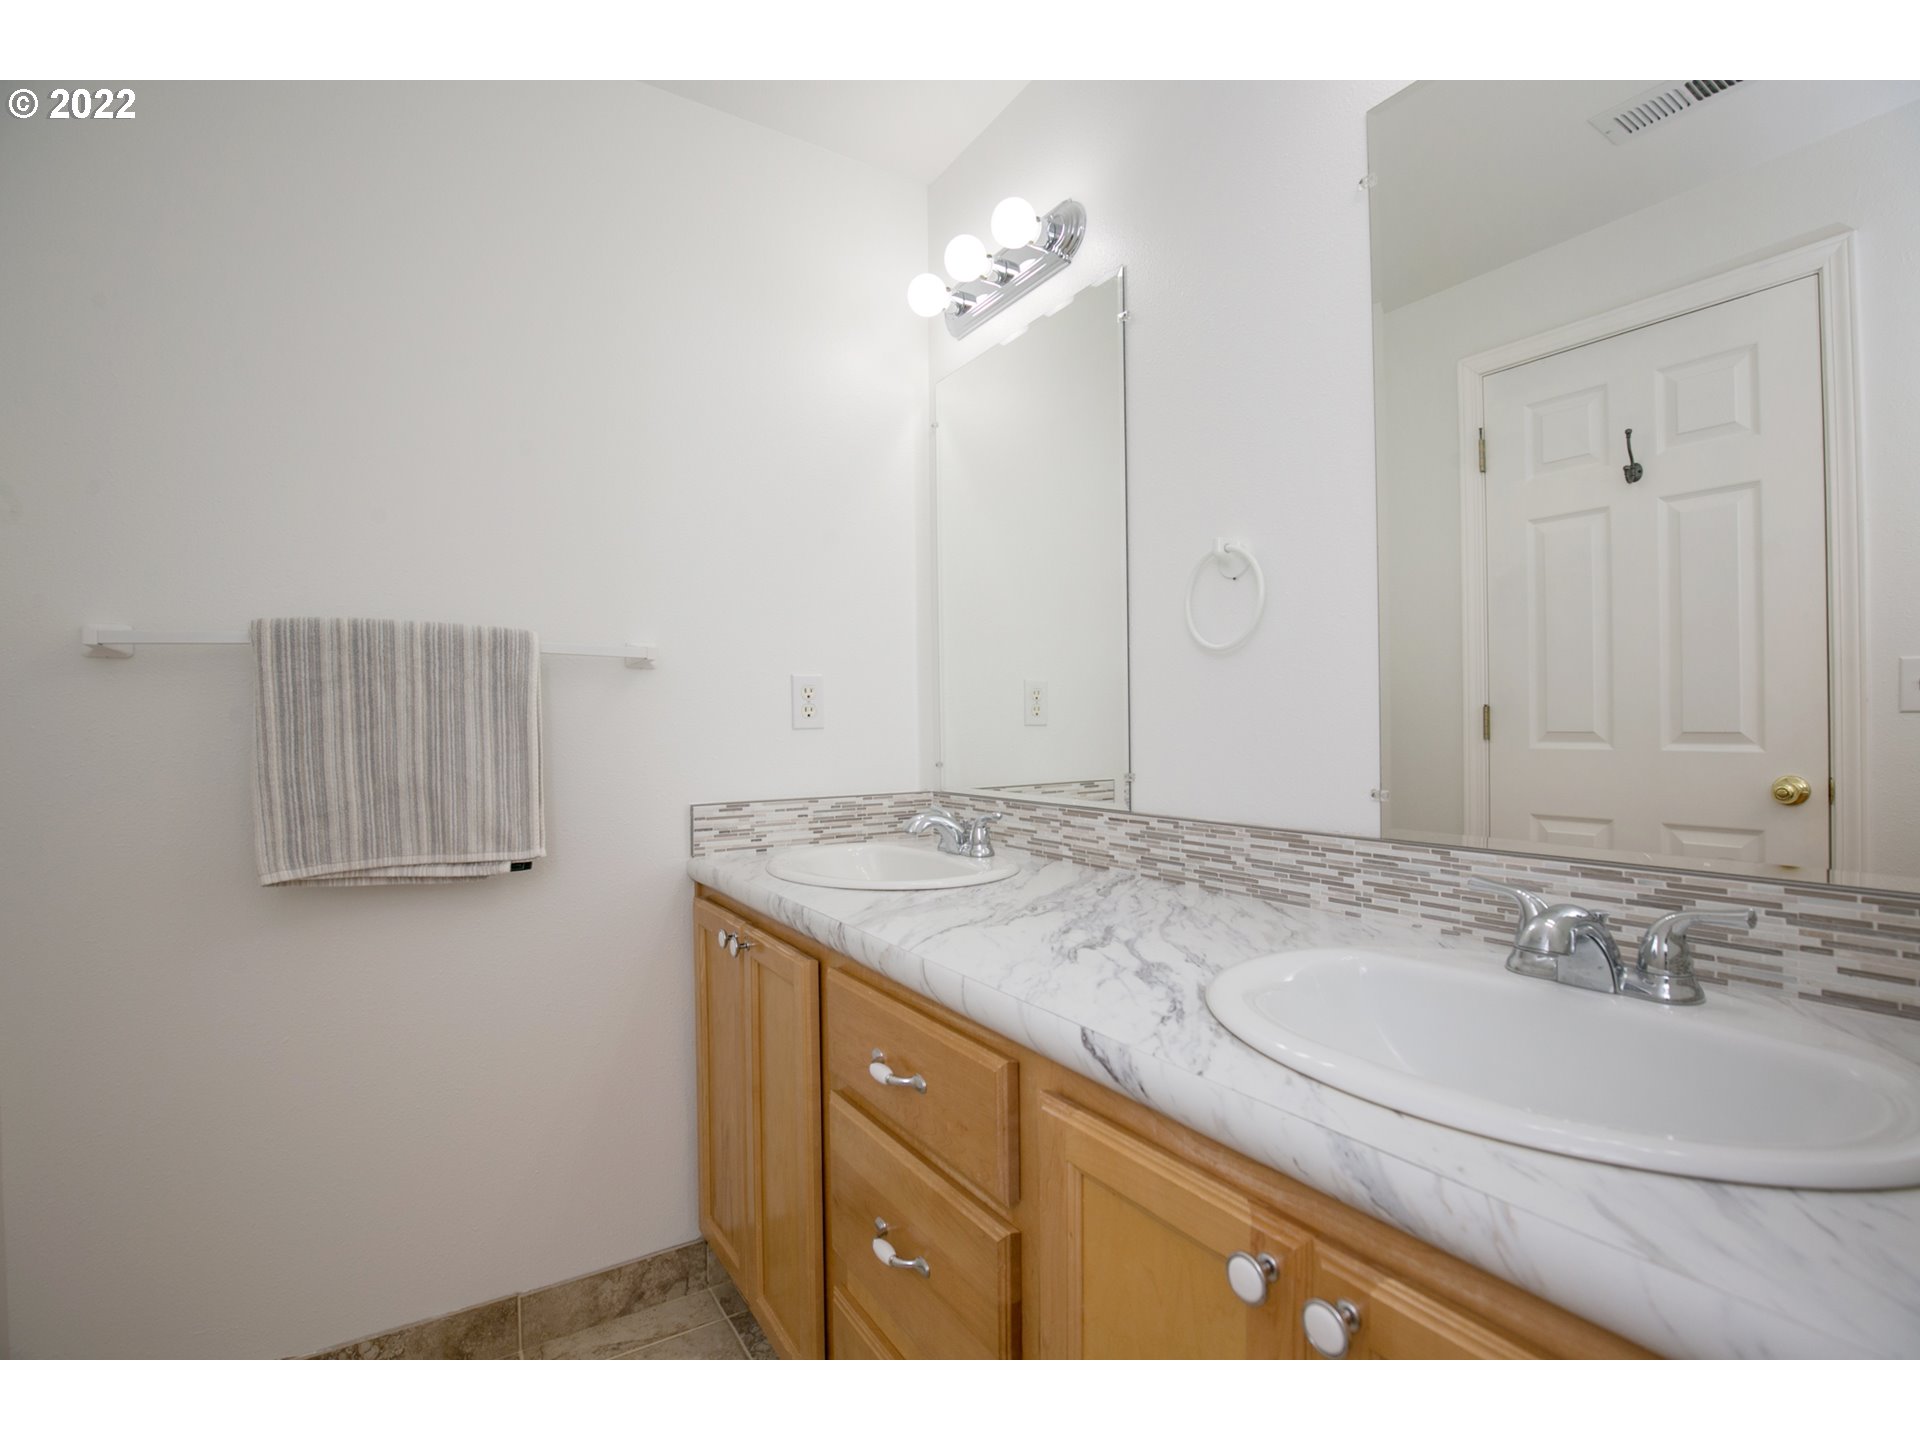 Owner's Suite Bathroom-Double Sinks